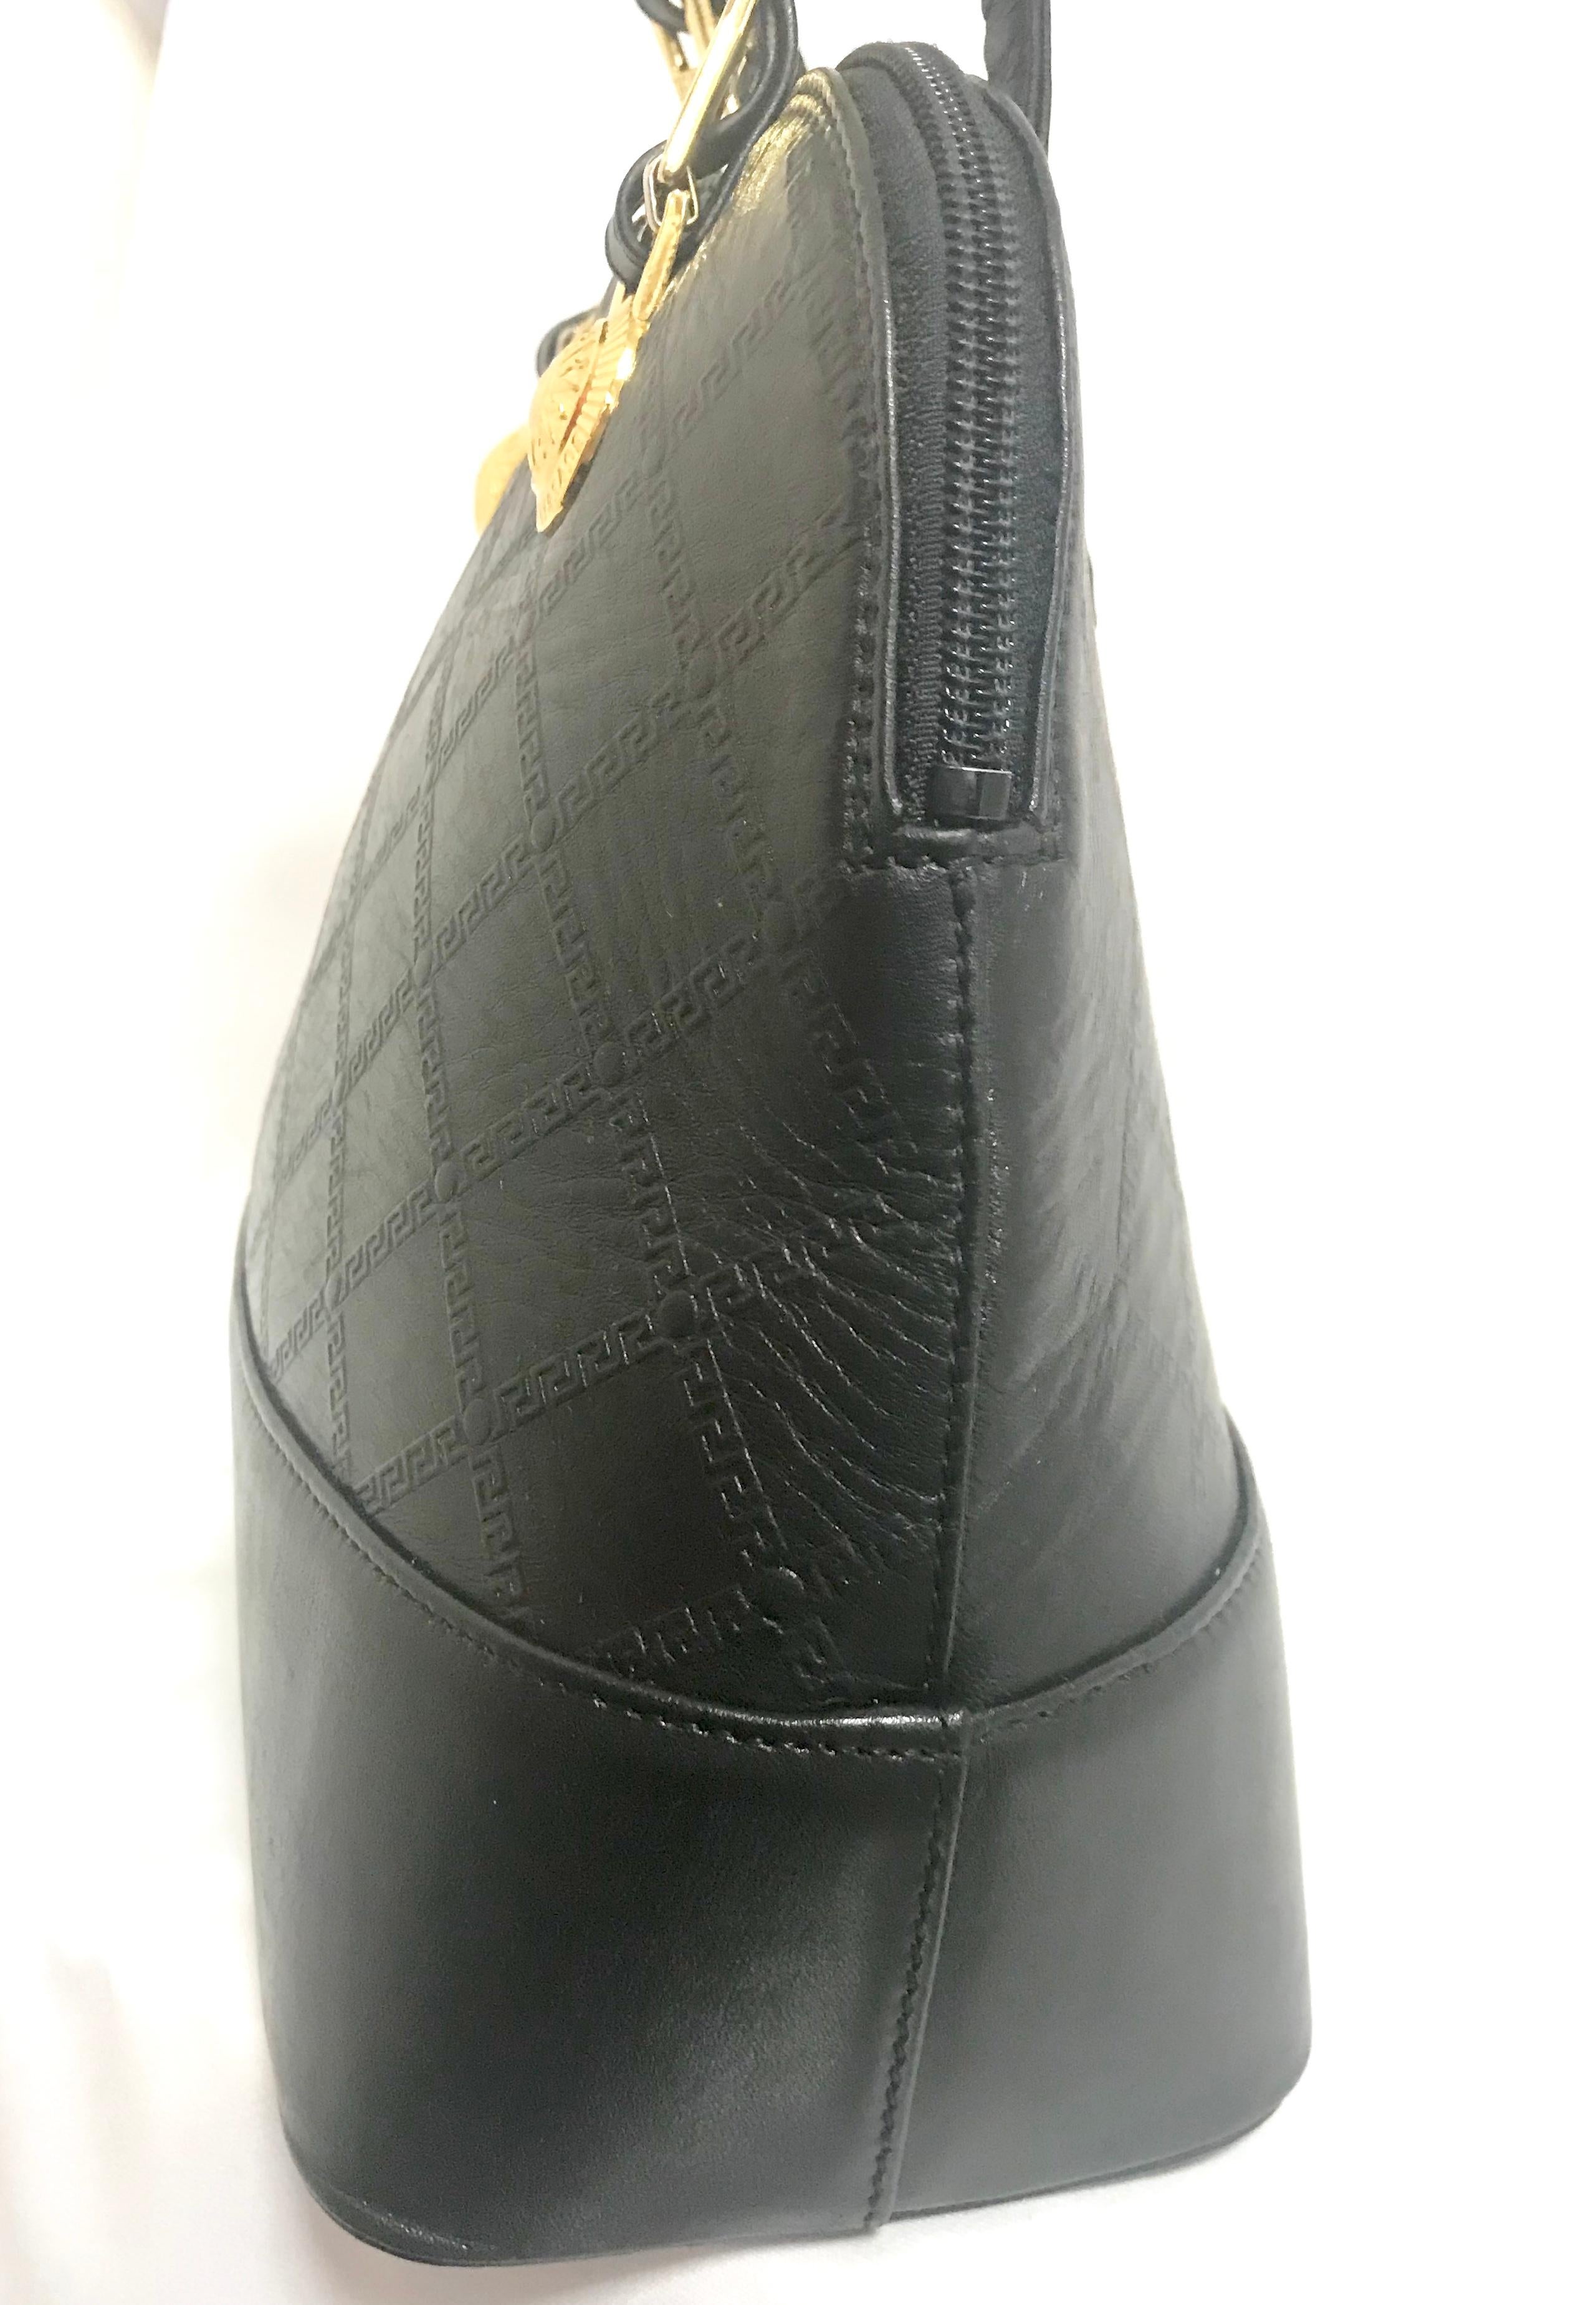 Gianni Versace Vintage black bolide shape bag with a tassel and sunburst motifs  For Sale 4